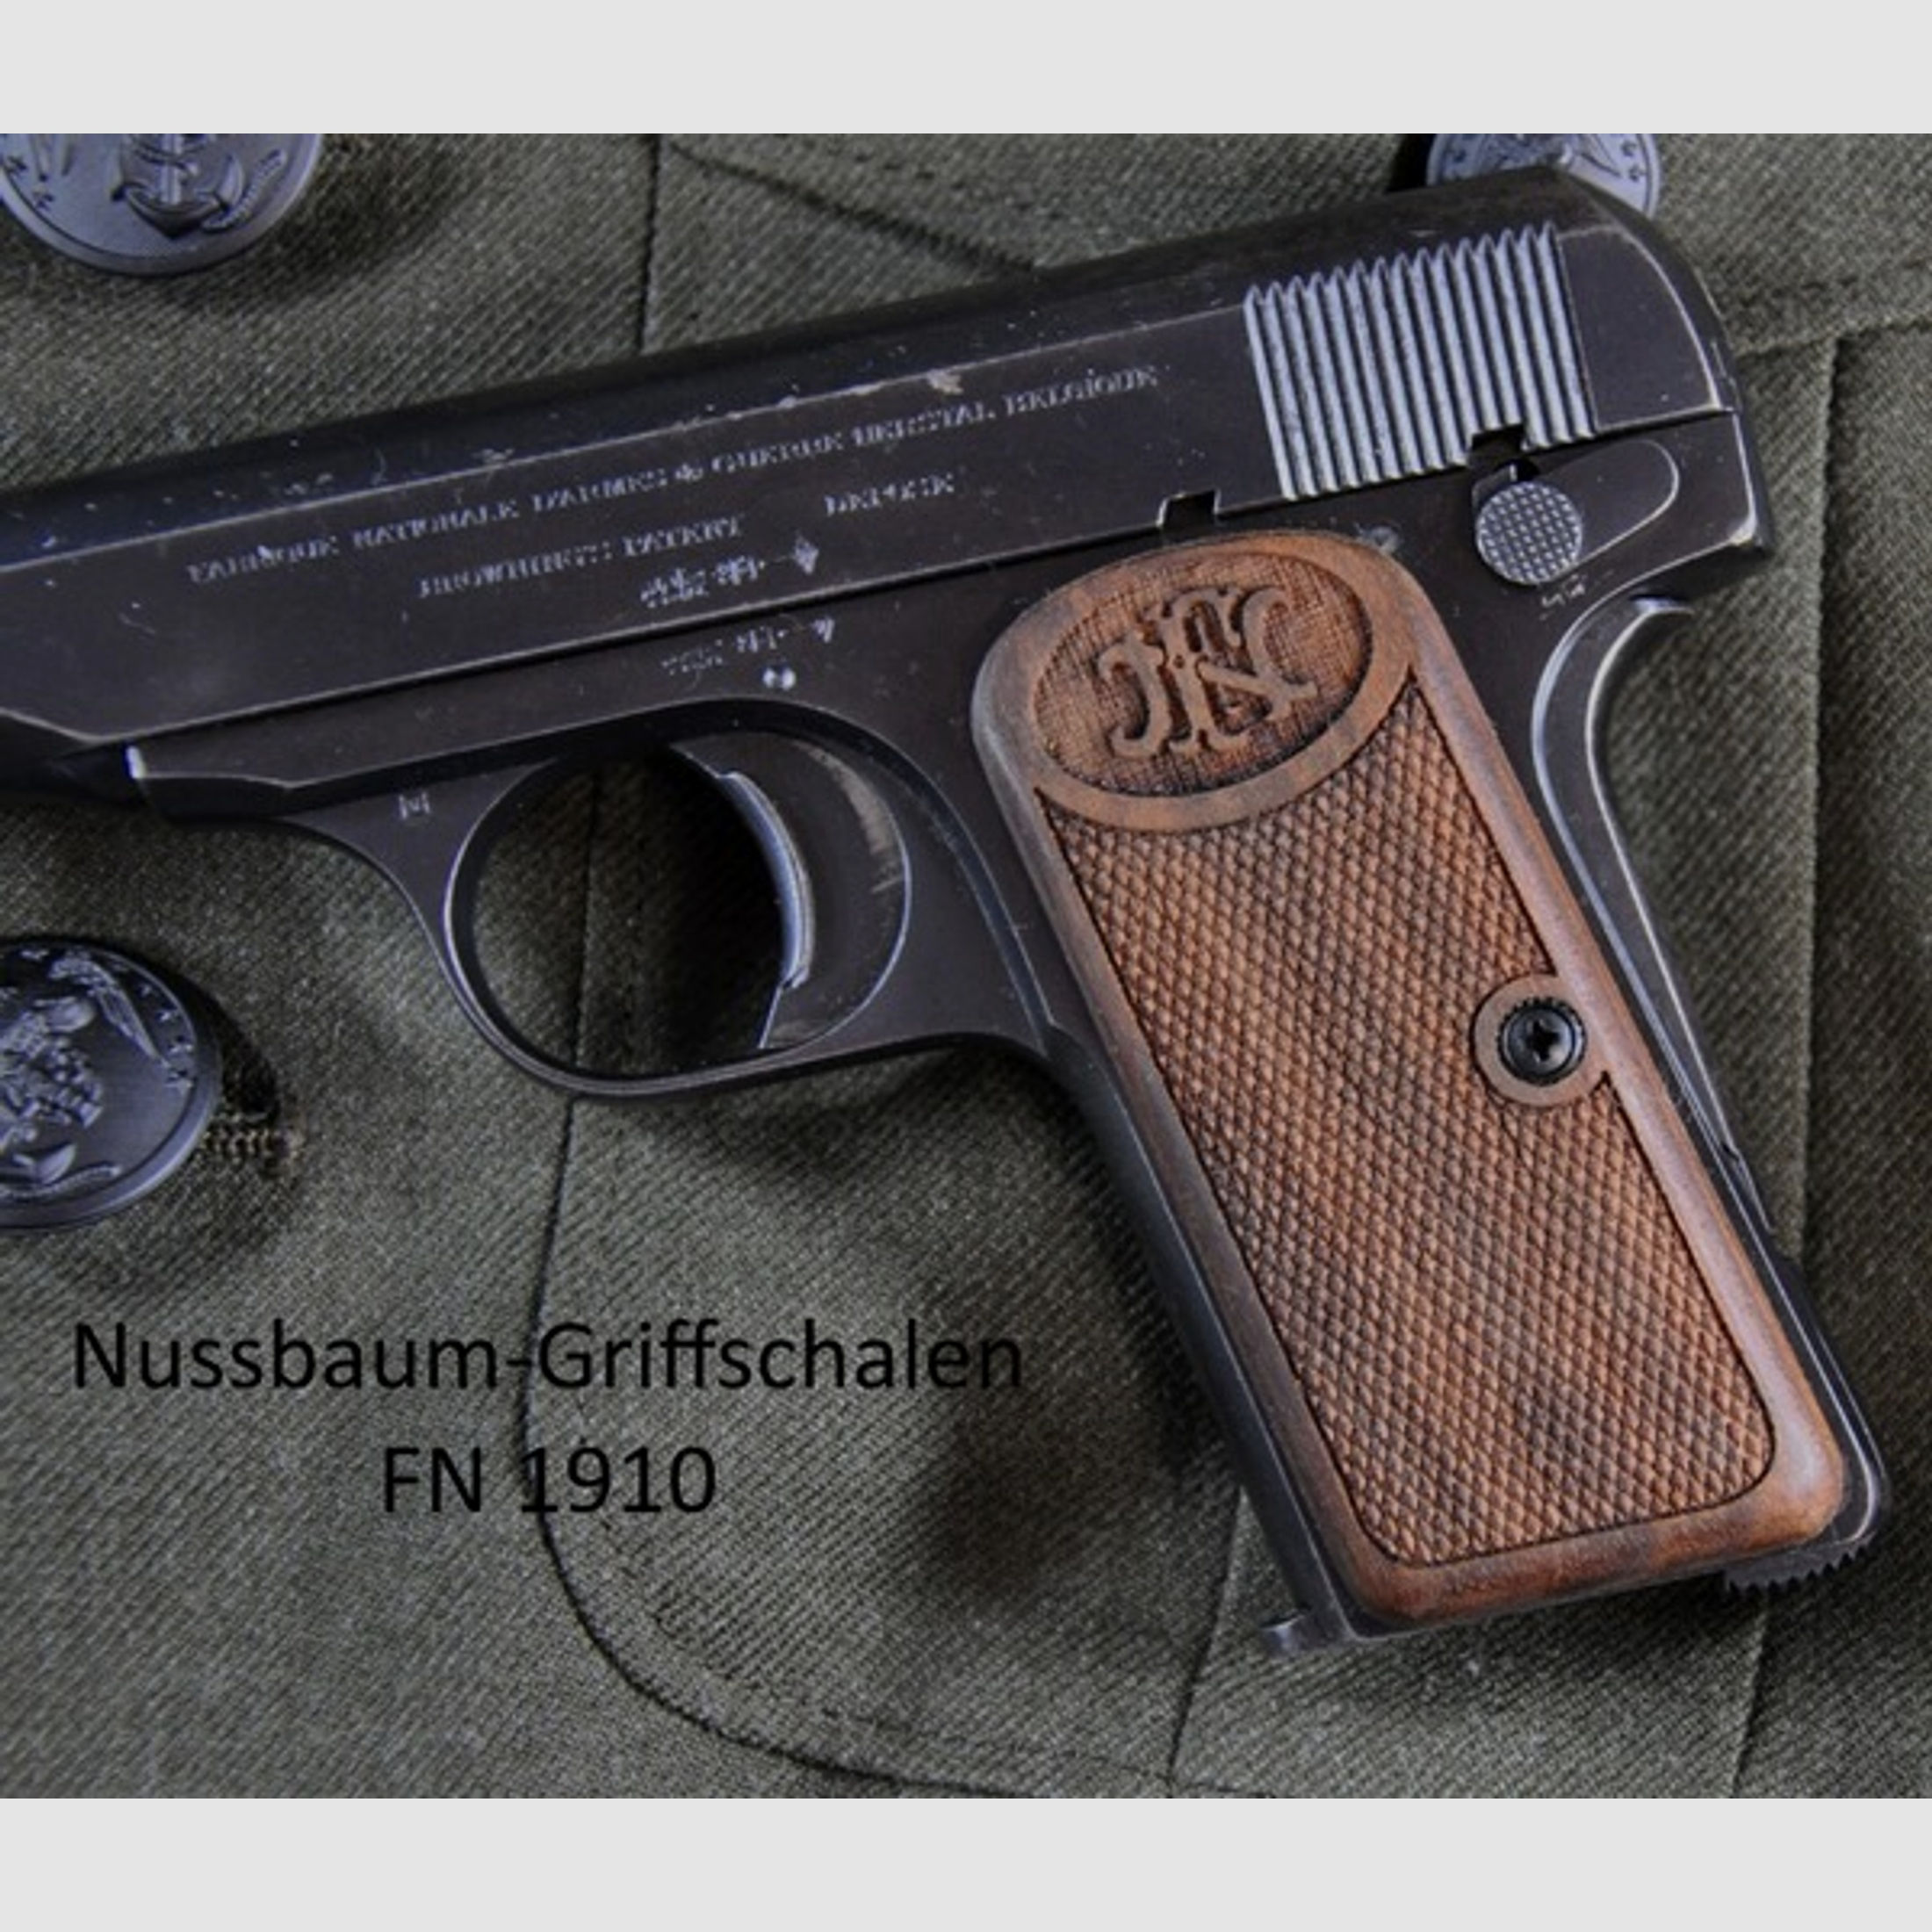 Nussbaum-Griffschalen für Pistole FN Mod. 1910